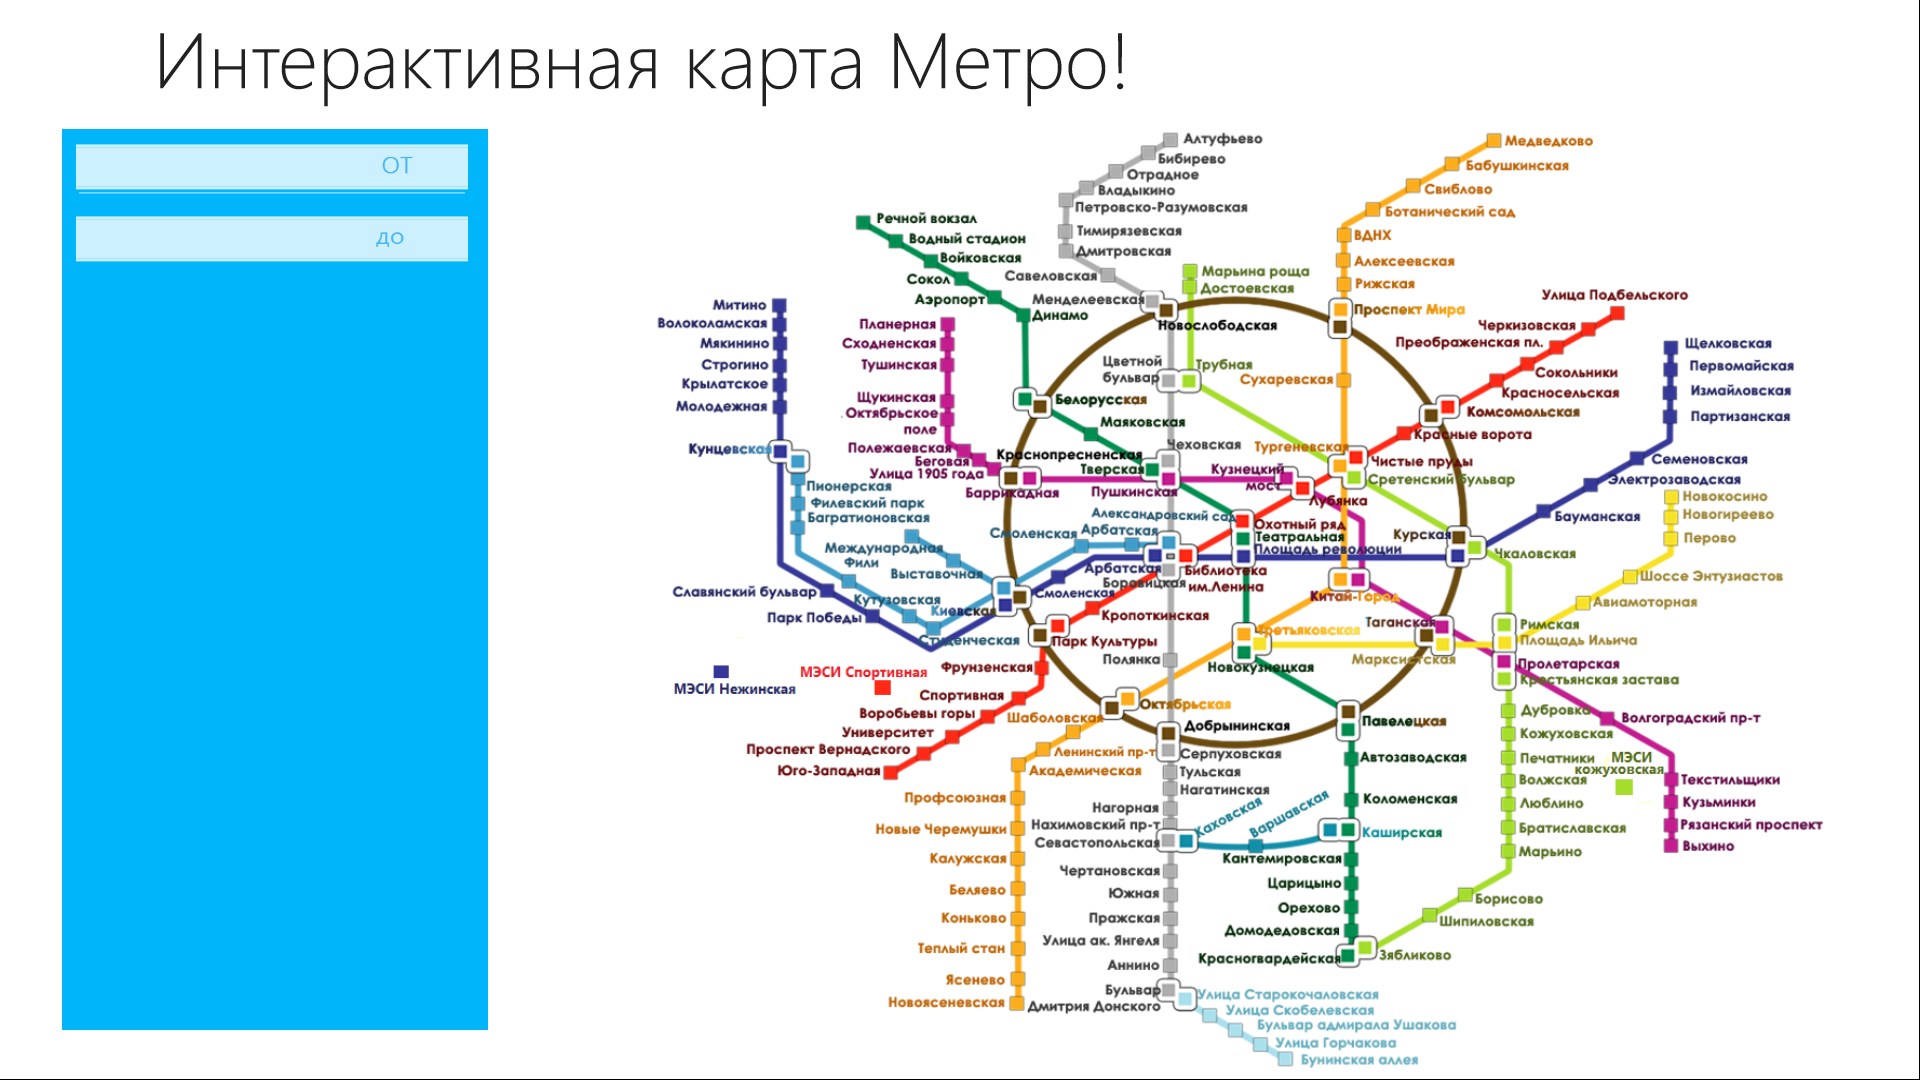 Метро котельники на схеме метро москвы